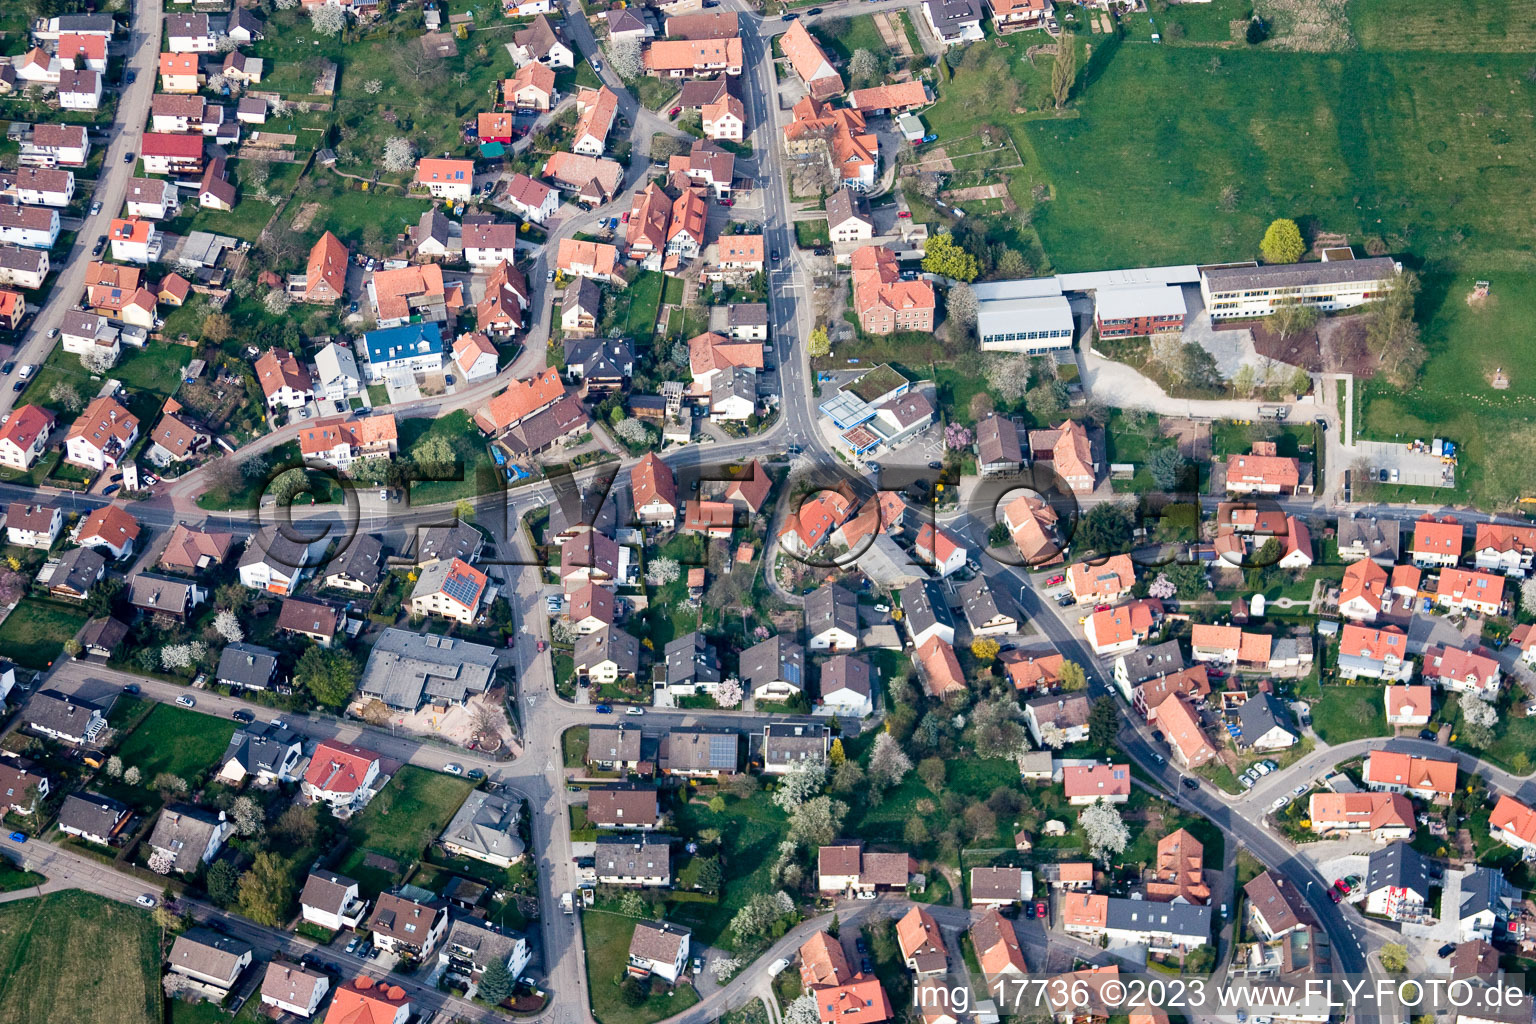 Ortsteil Schöllbronn in Ettlingen im Bundesland Baden-Württemberg, Deutschland von der Drohne aus gesehen